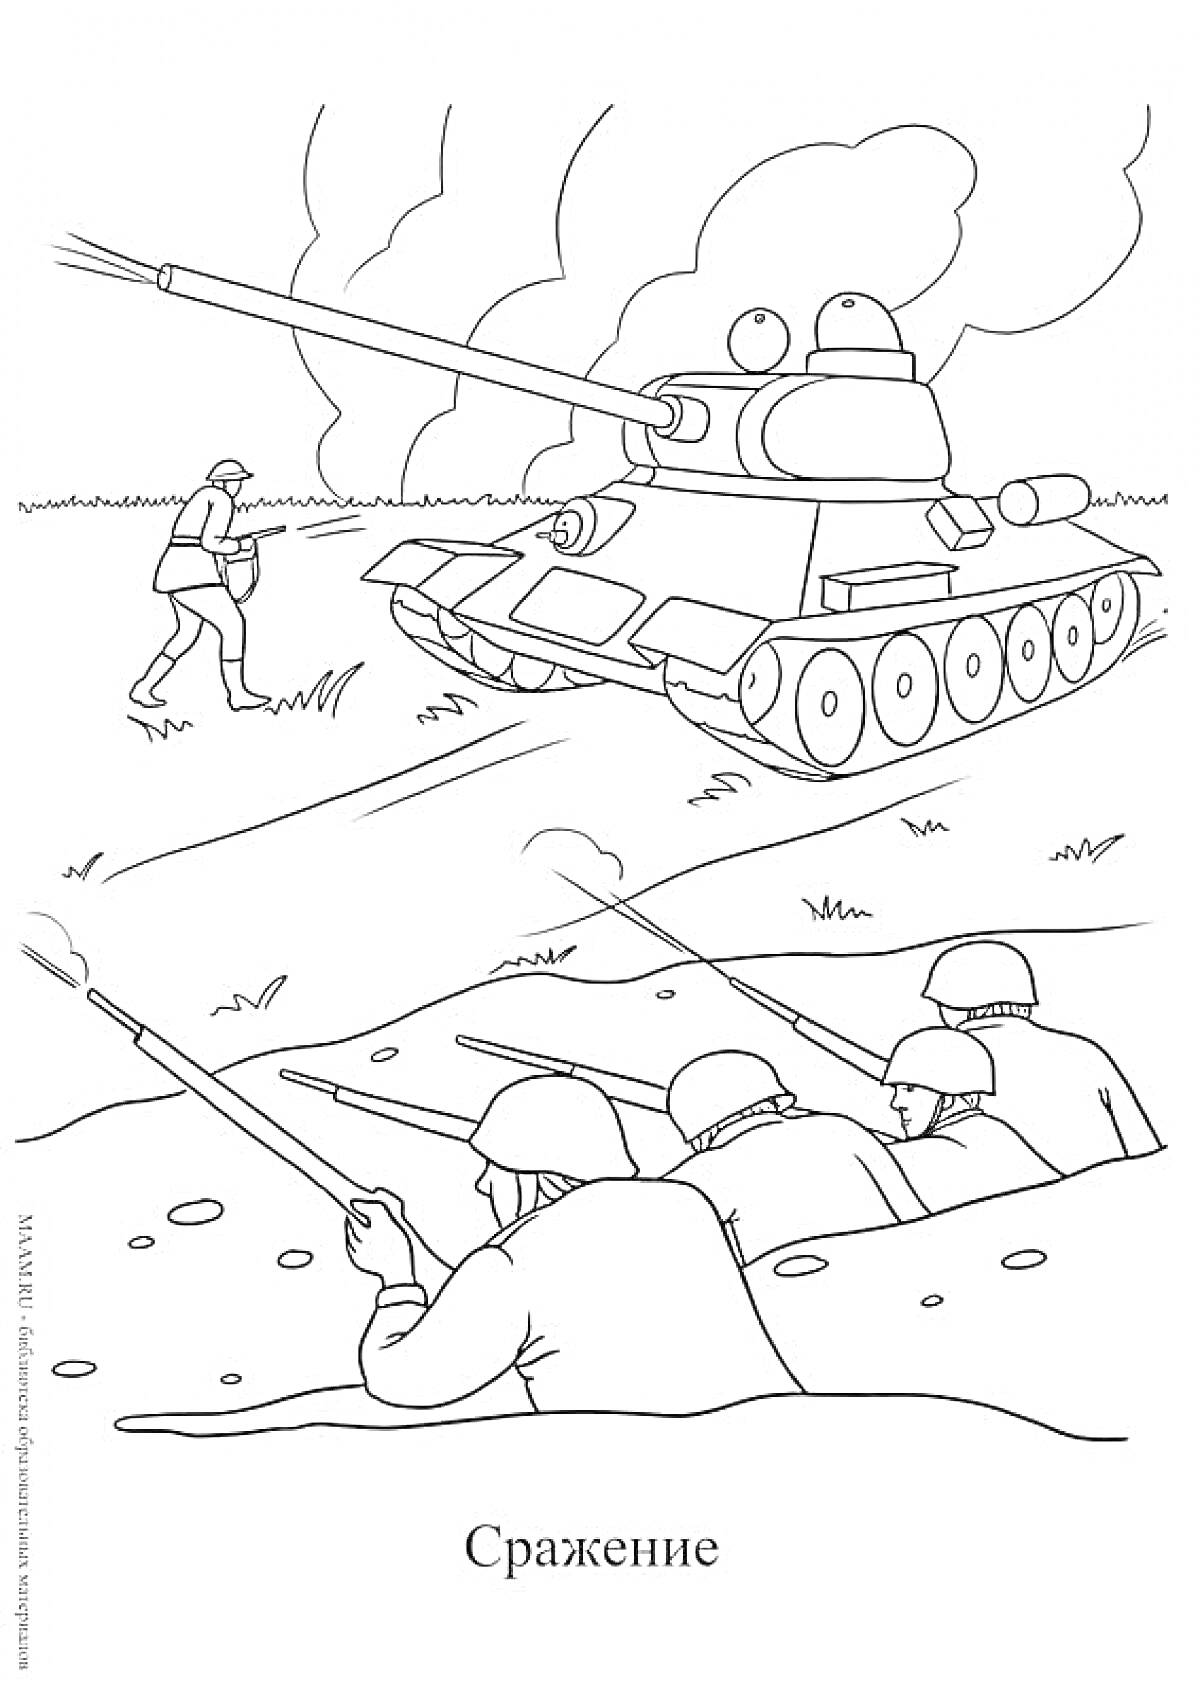 Танковая атака и окопные солдаты во время Сталинградской битвы